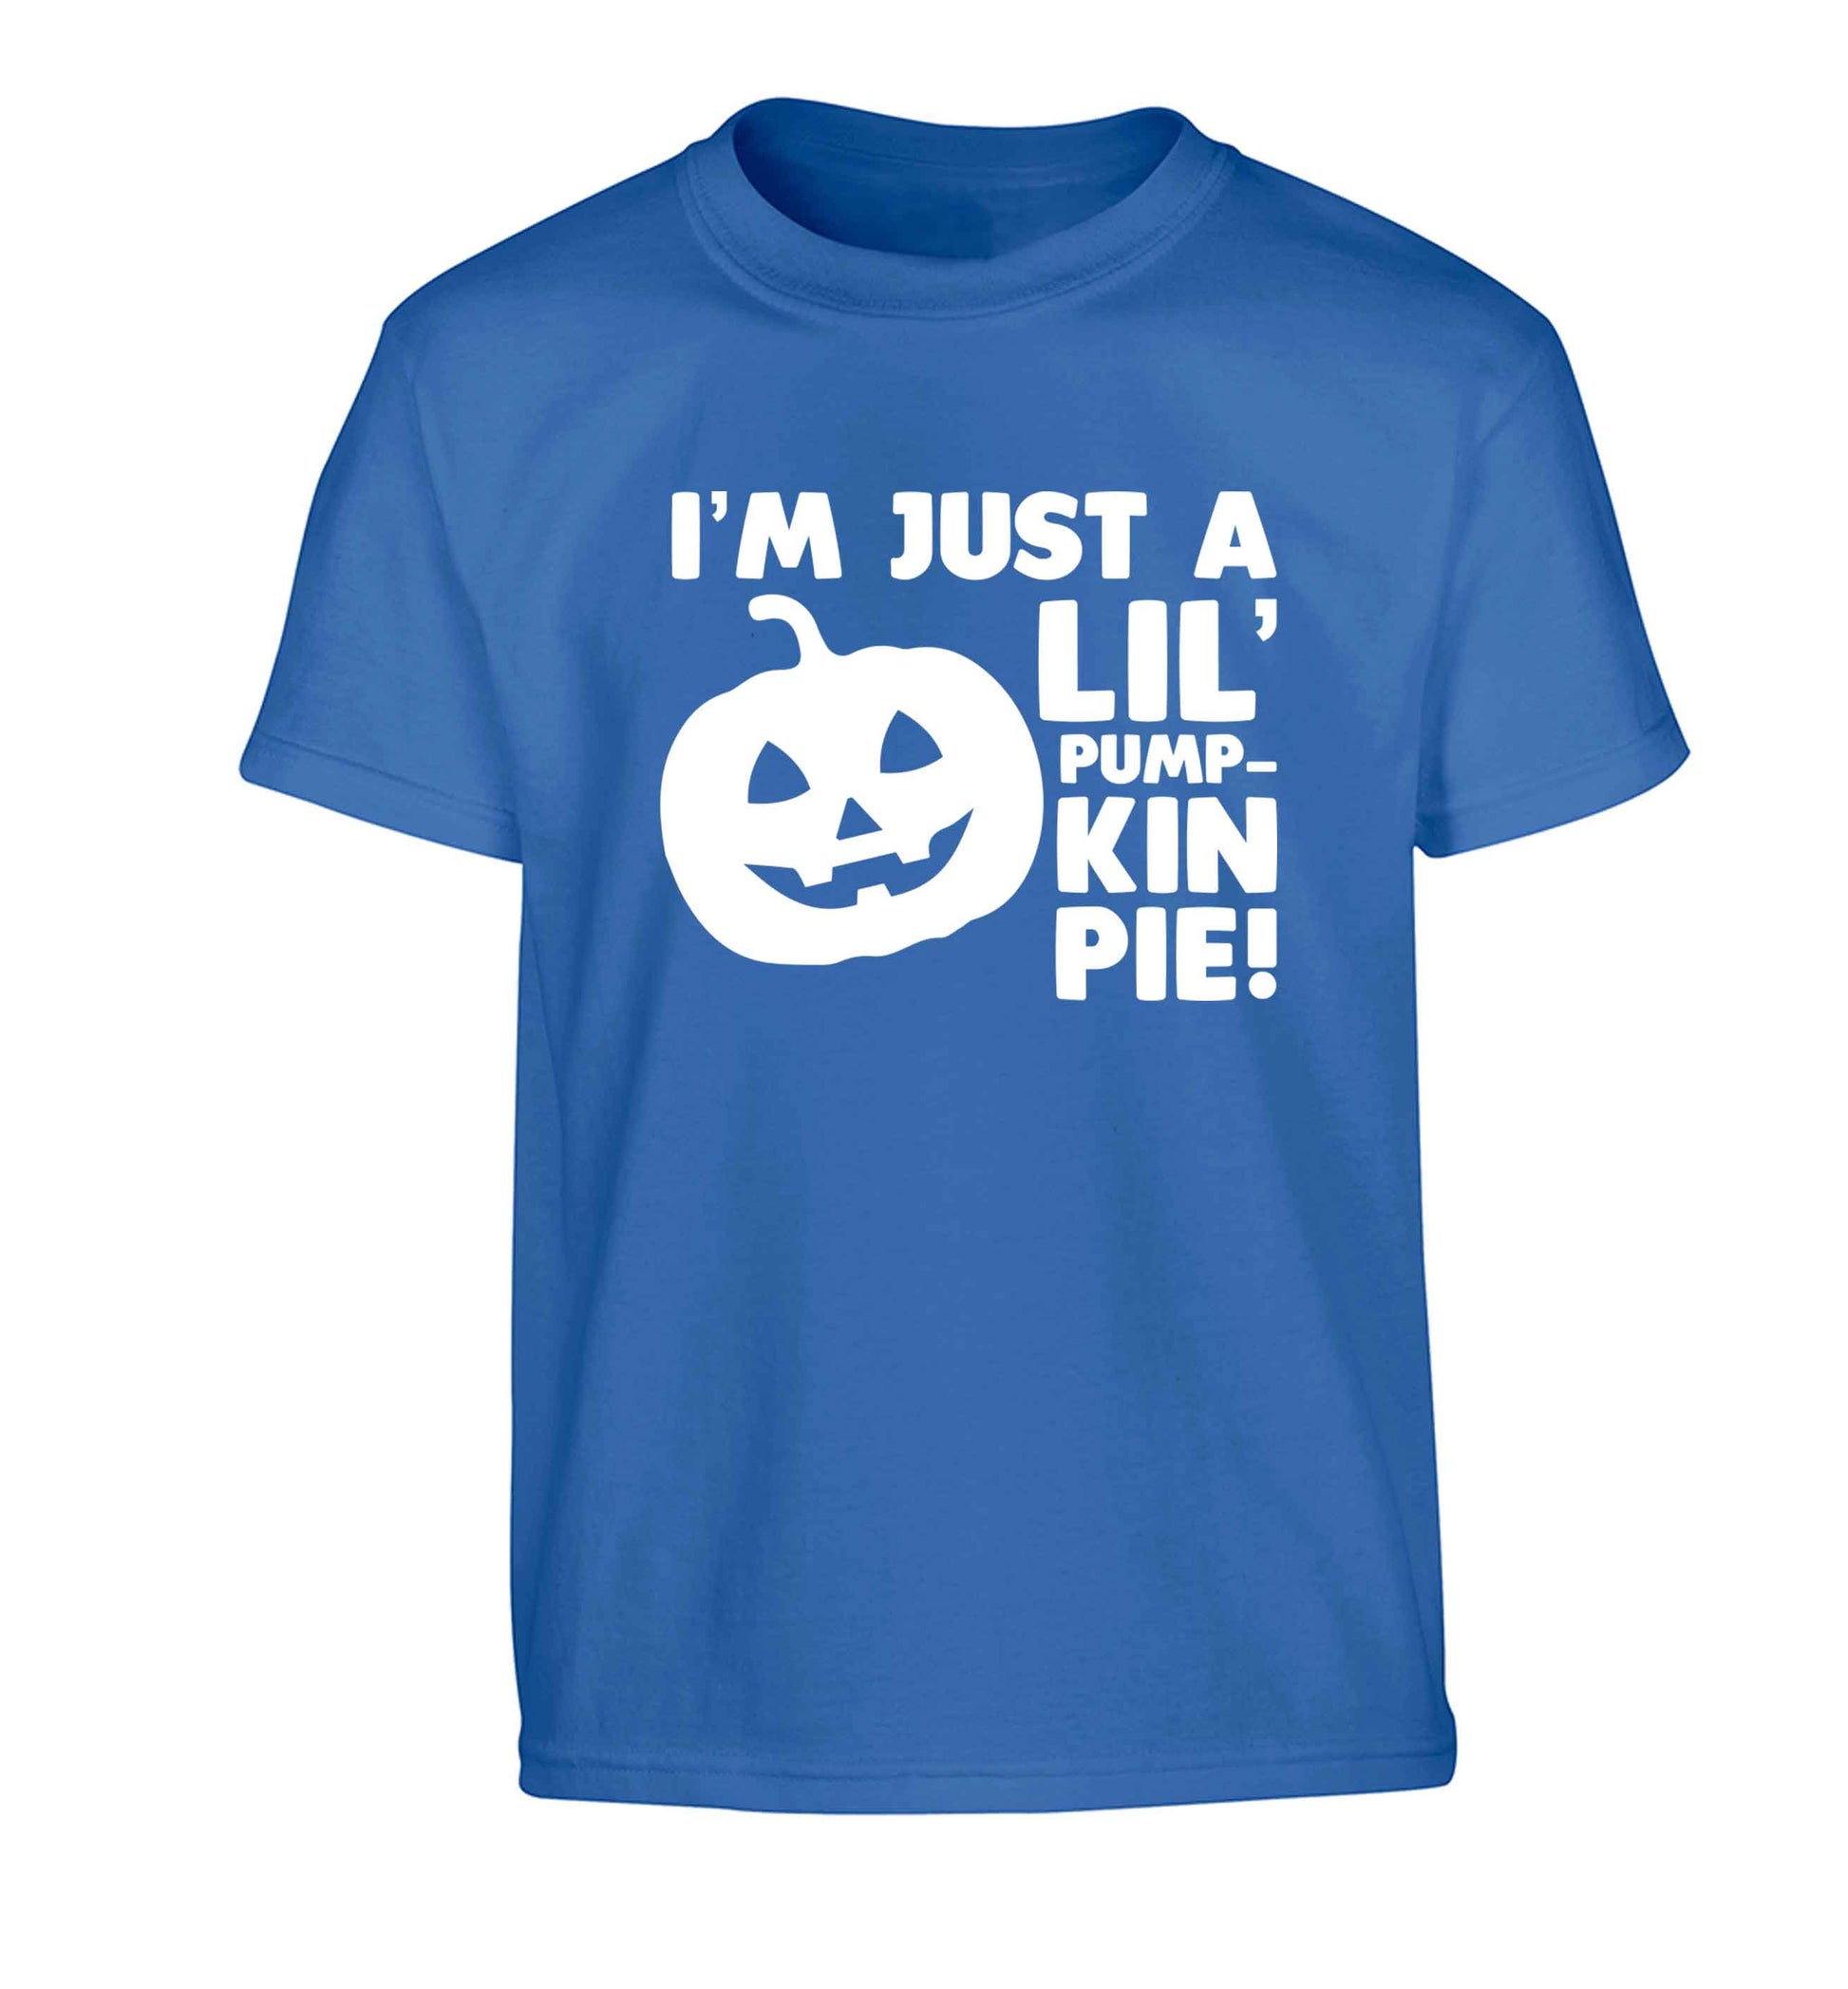 I'm just a lil' pumpkin pie Children's blue Tshirt 12-13 Years